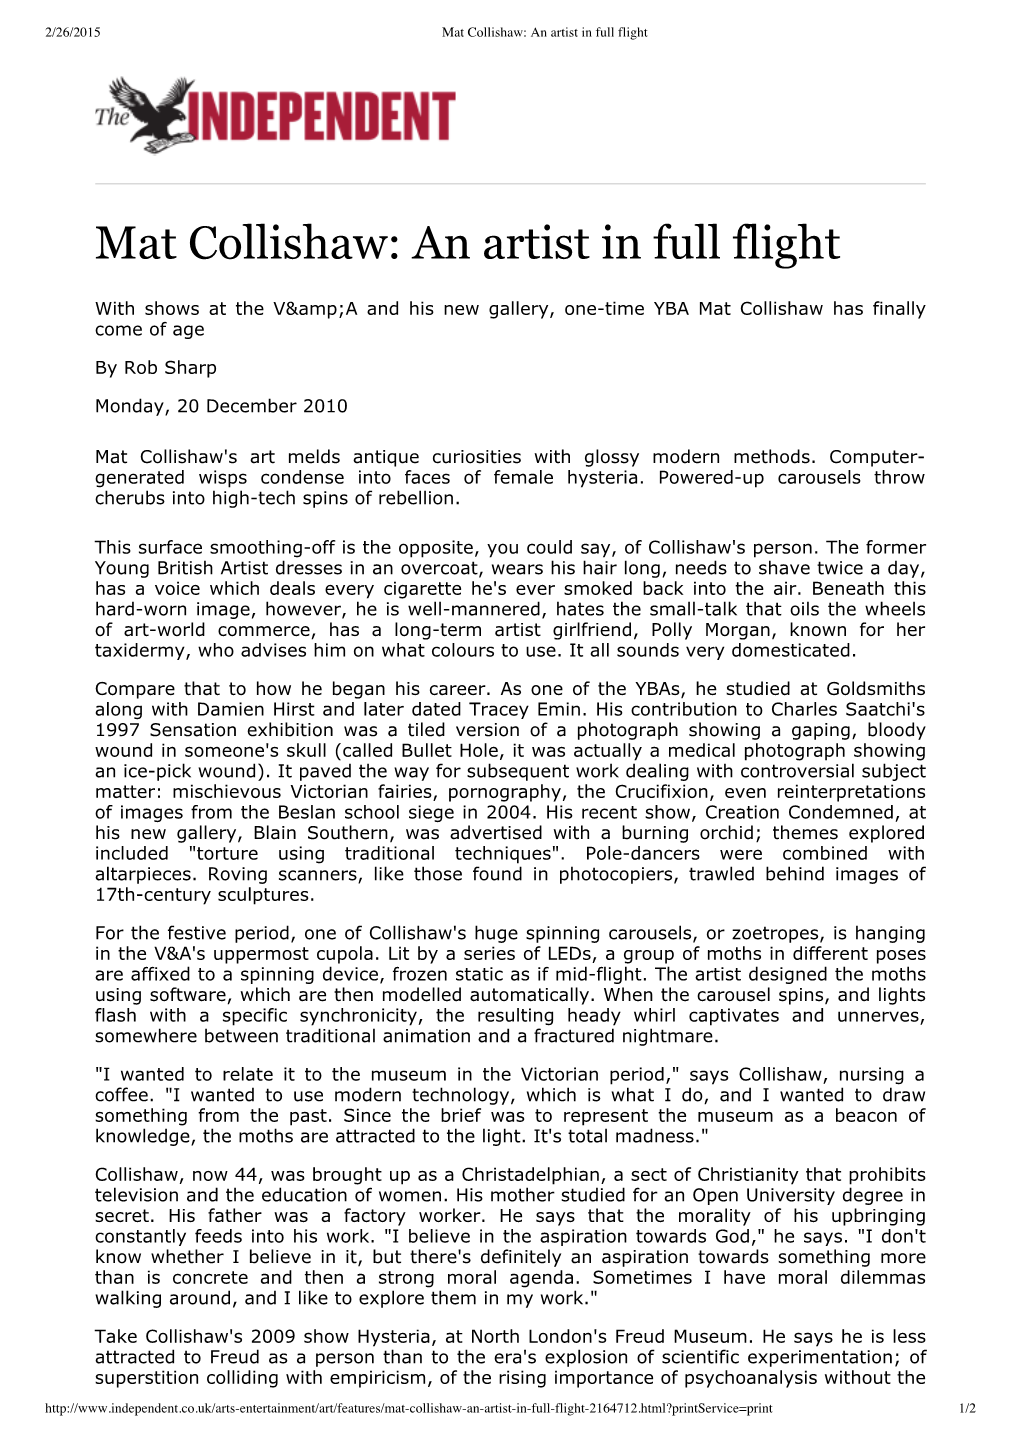 Mat Collishaw: an Artist in Full Flight